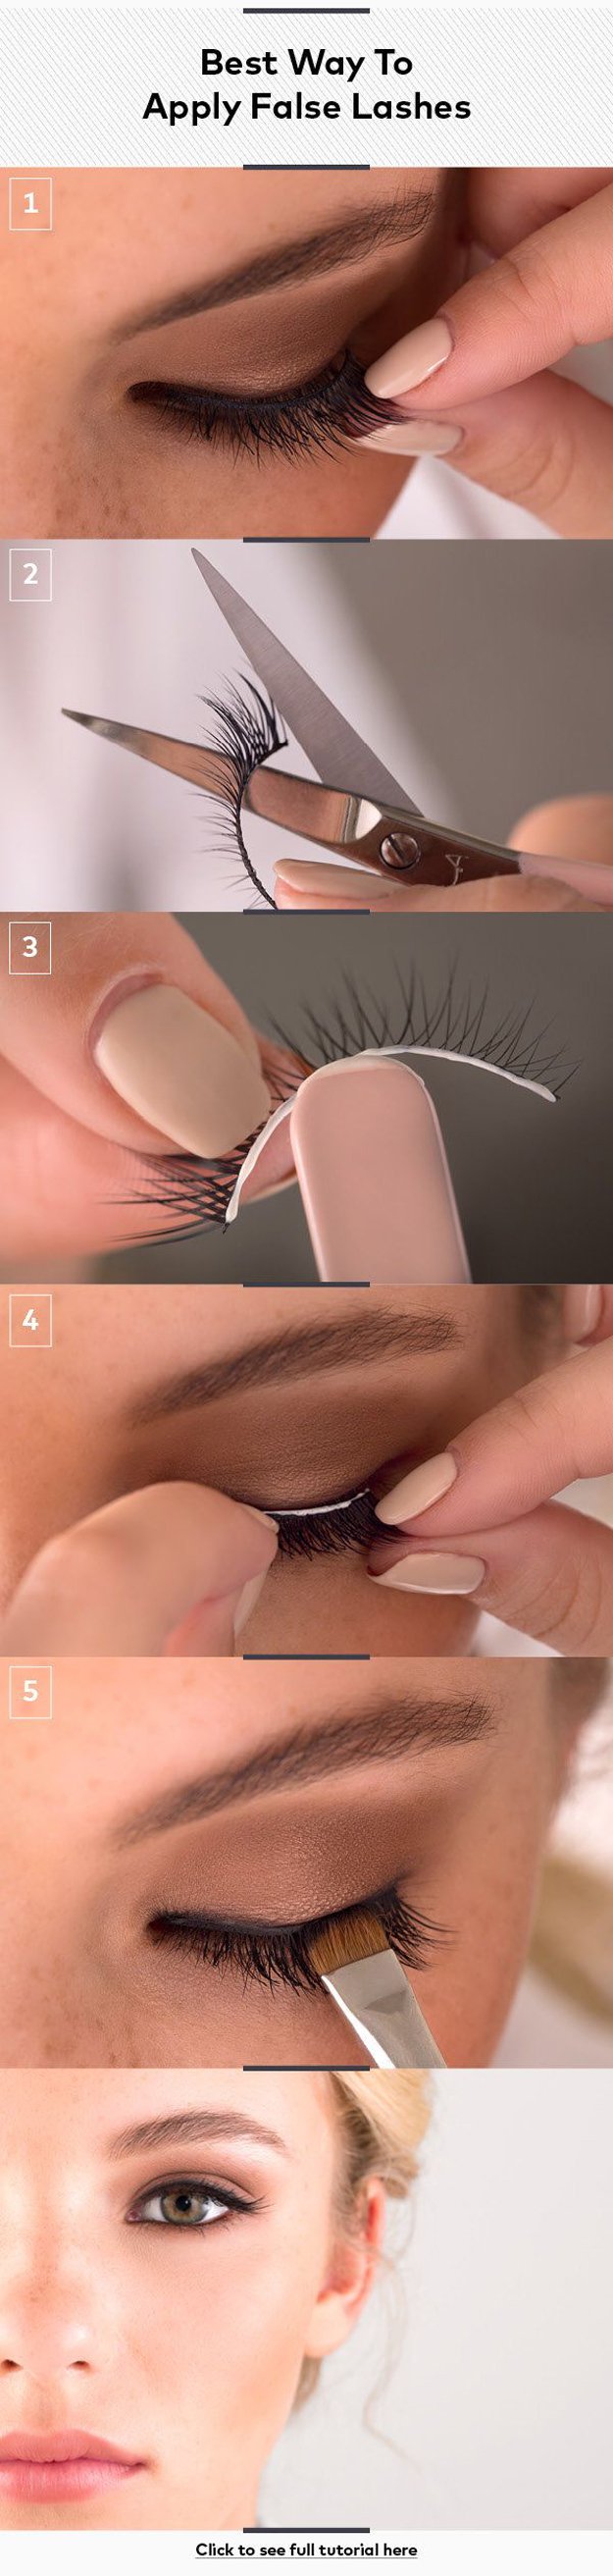 how-to-apply-fake-eyelashes